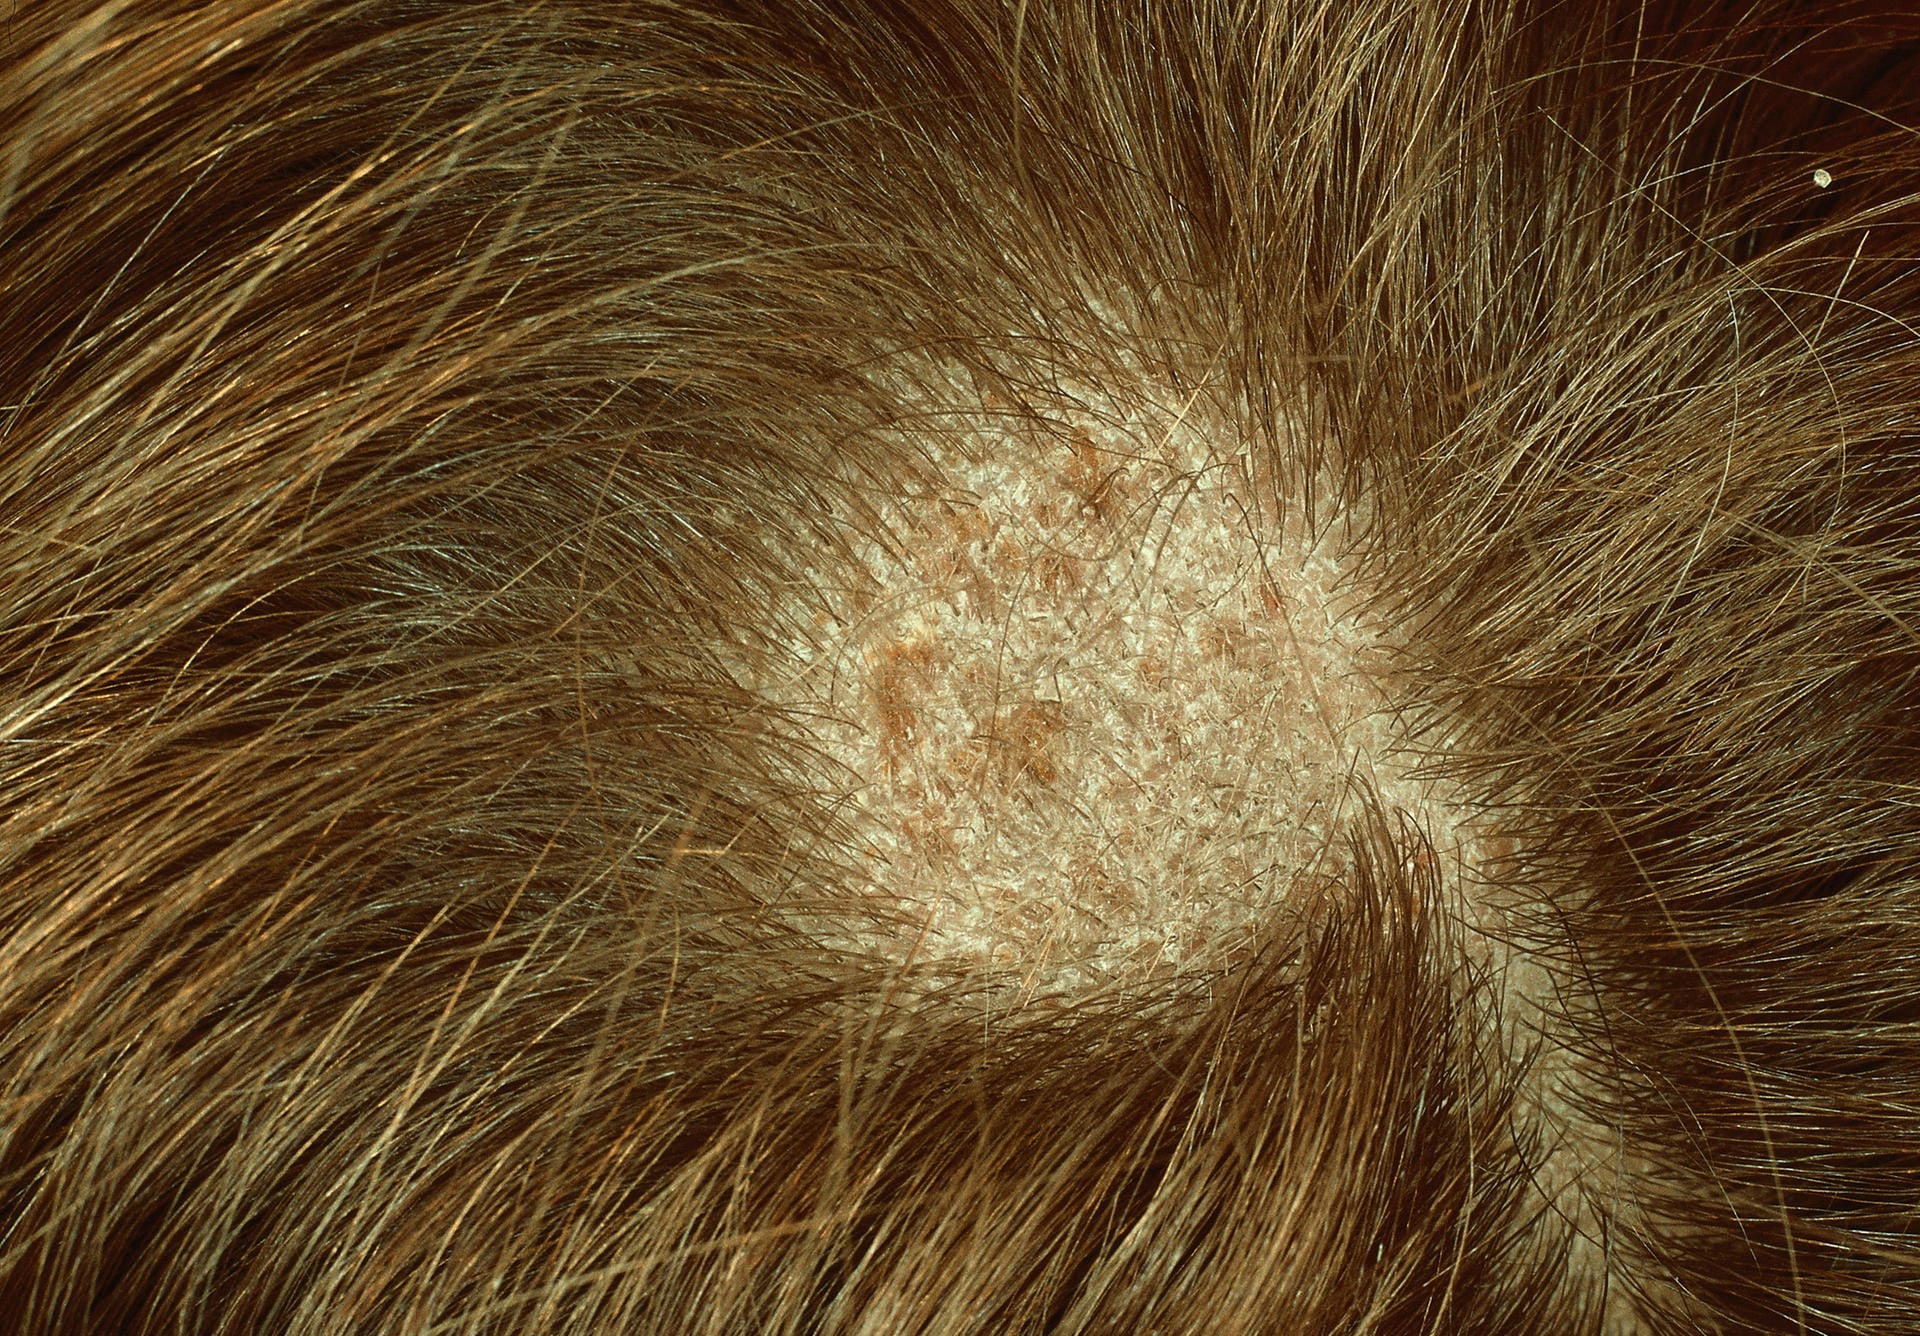 Tinea capitis: Pilzbefall der Kopfhaut mit kreisrundem Haarausfall, auch genannt "Scherpilzflechte".